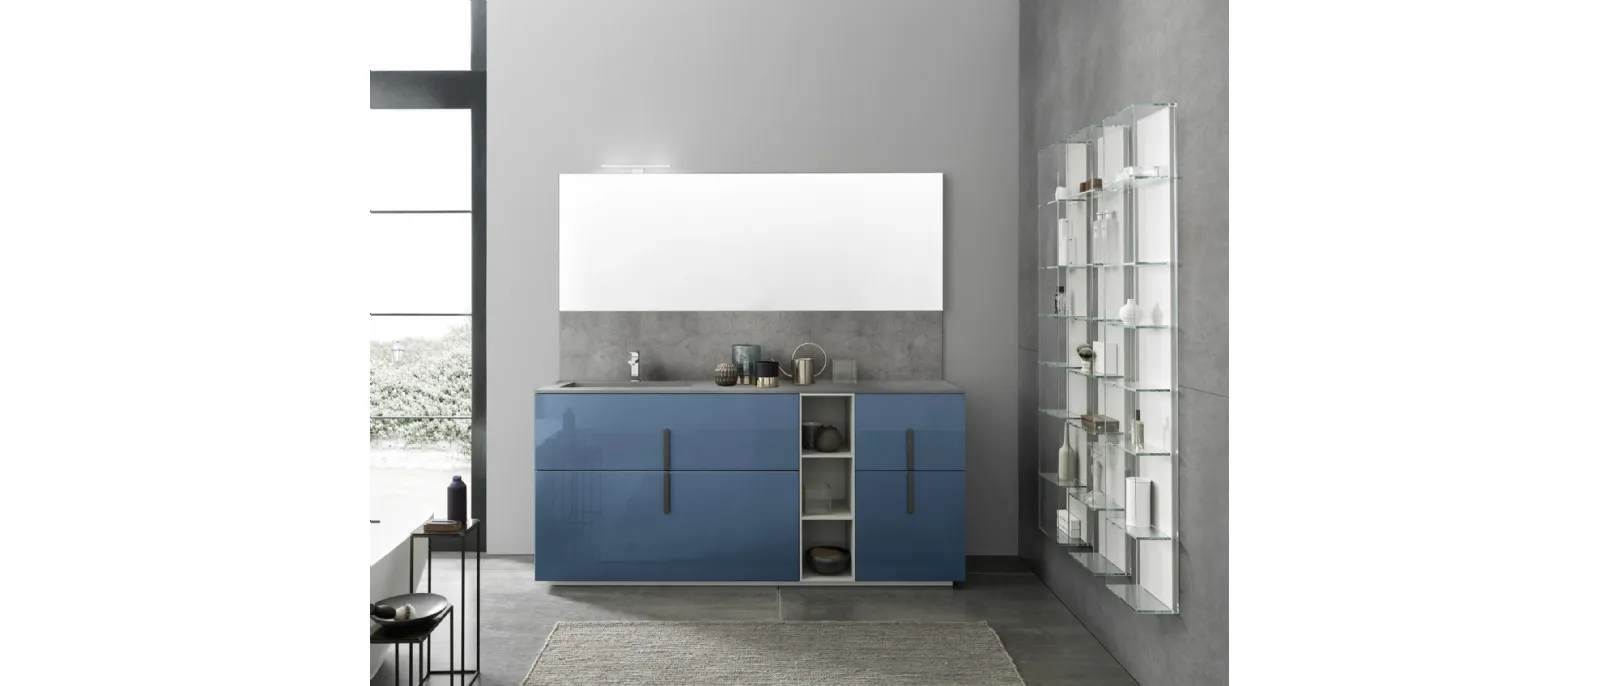 Mobile bagno da appoggio M System C012 in laccato lucido Blu Artico di Baxar